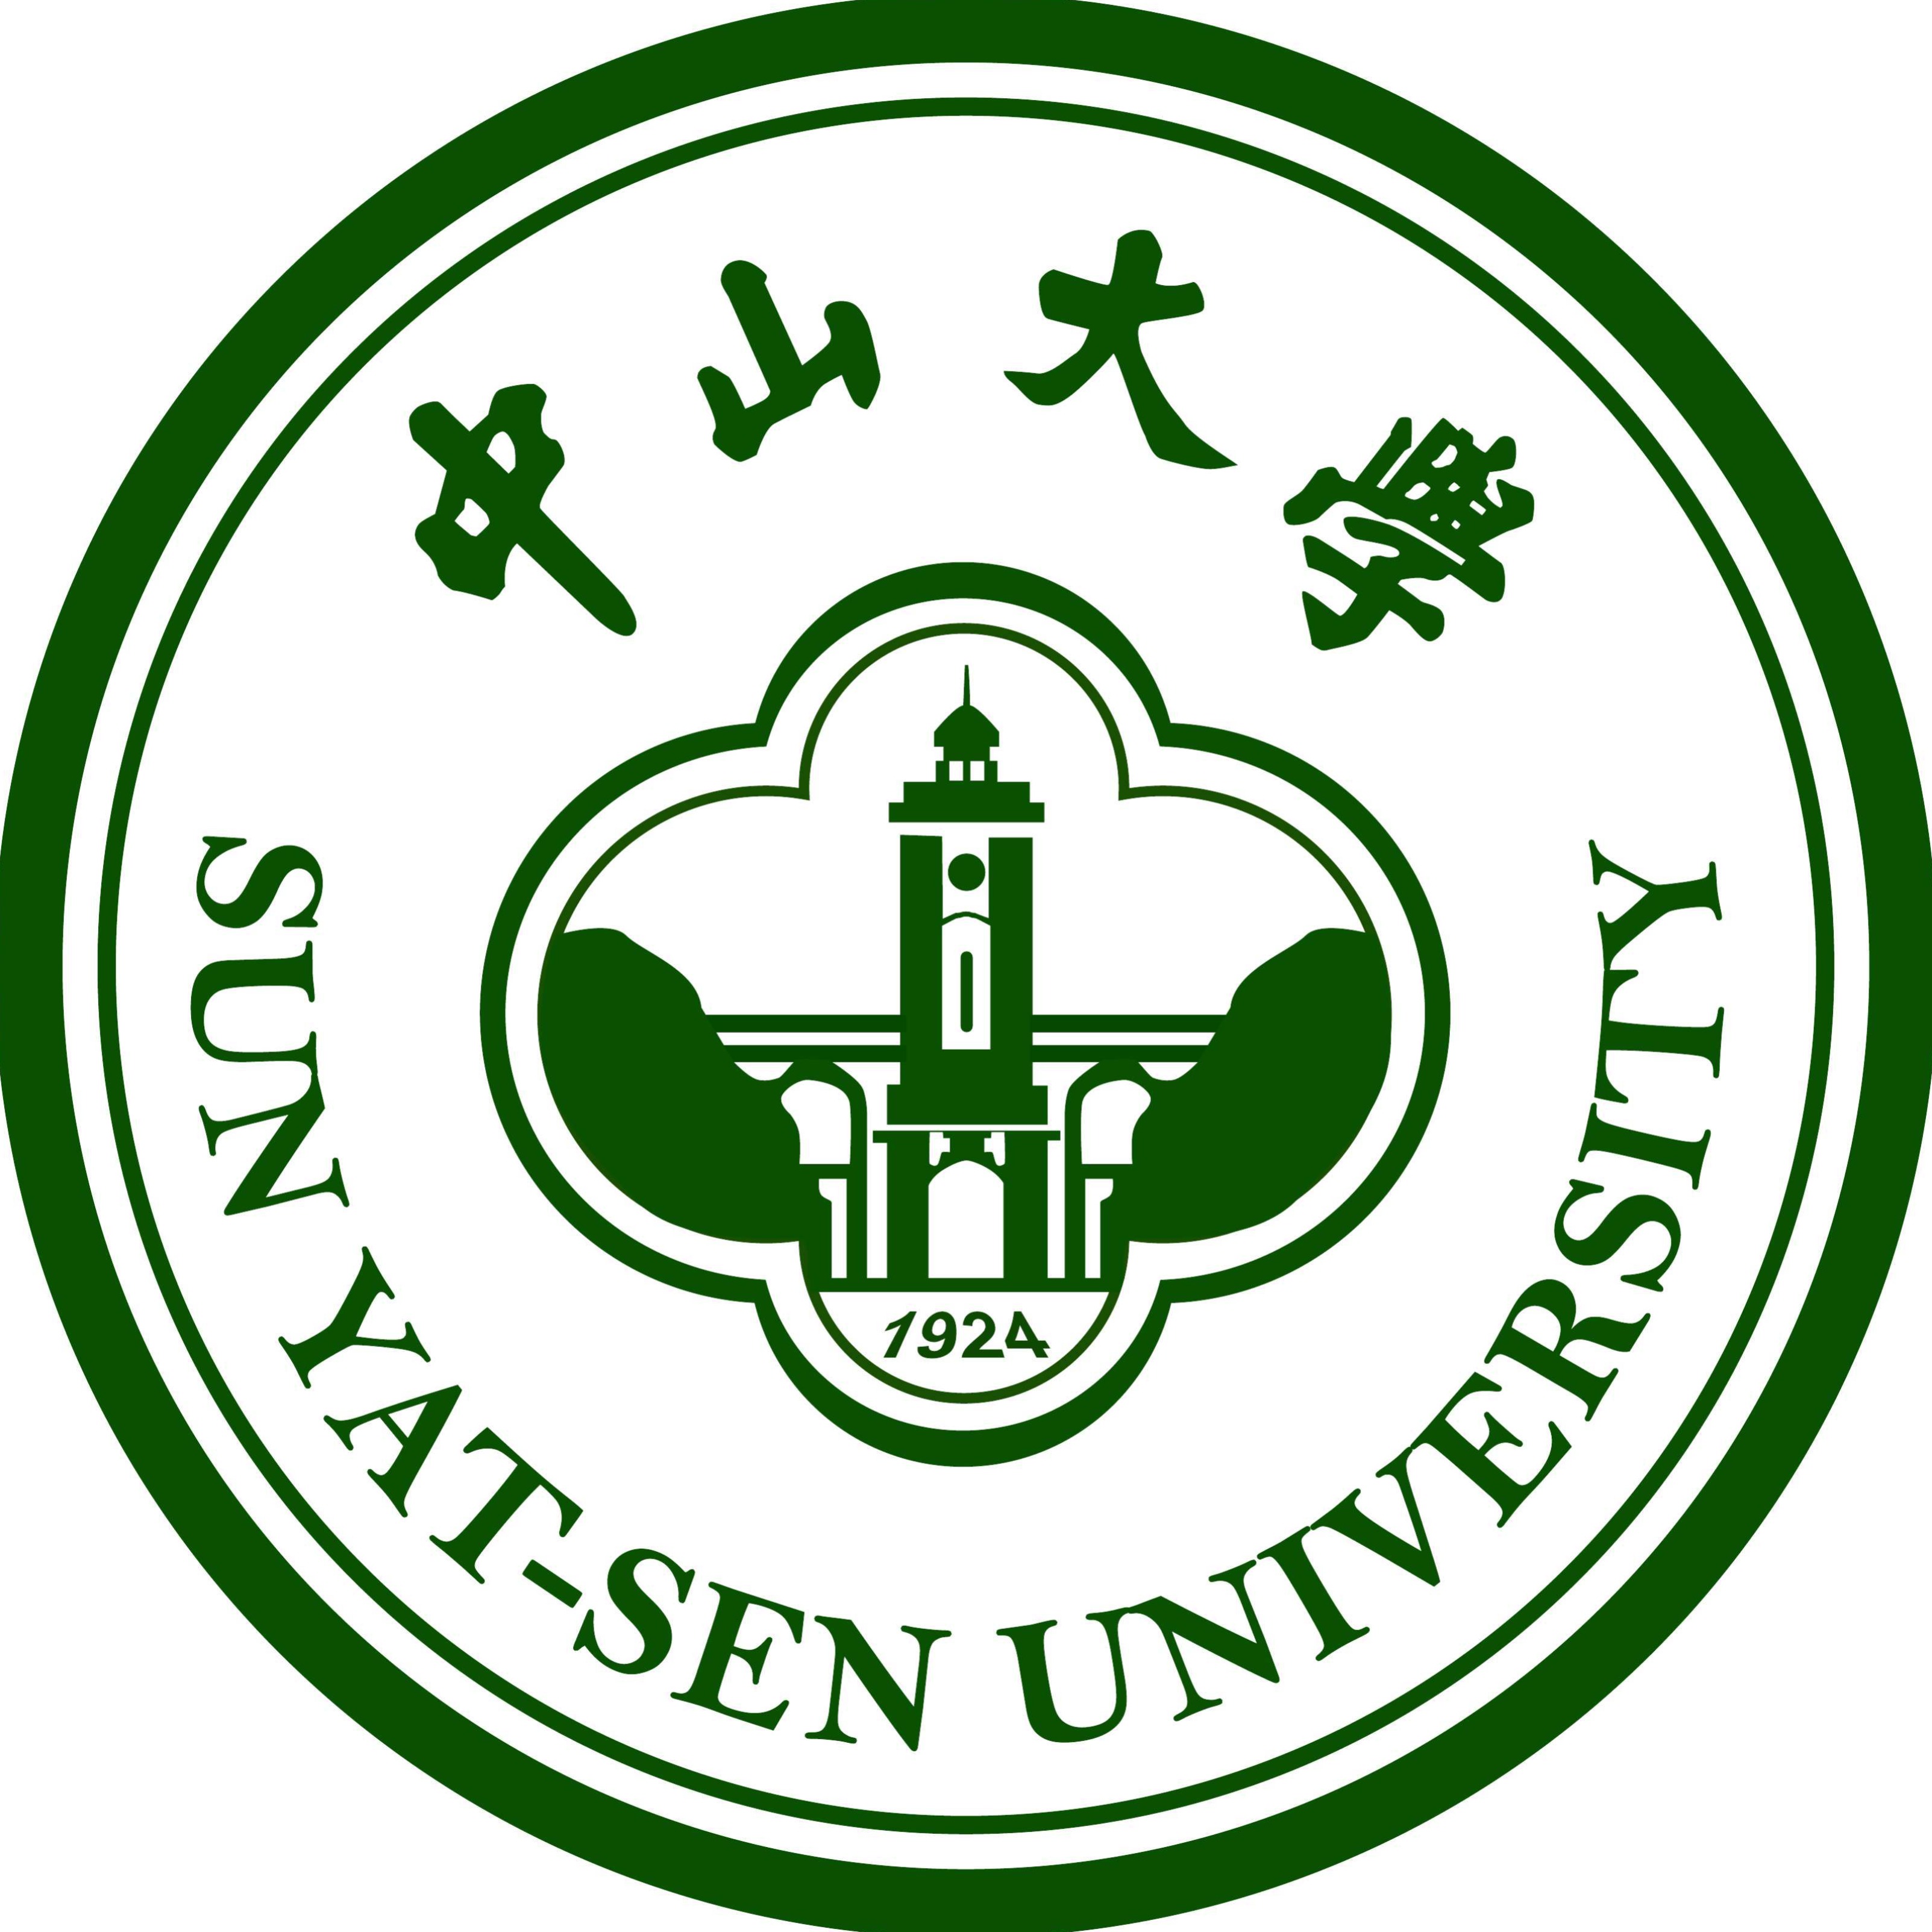 中山大学logo